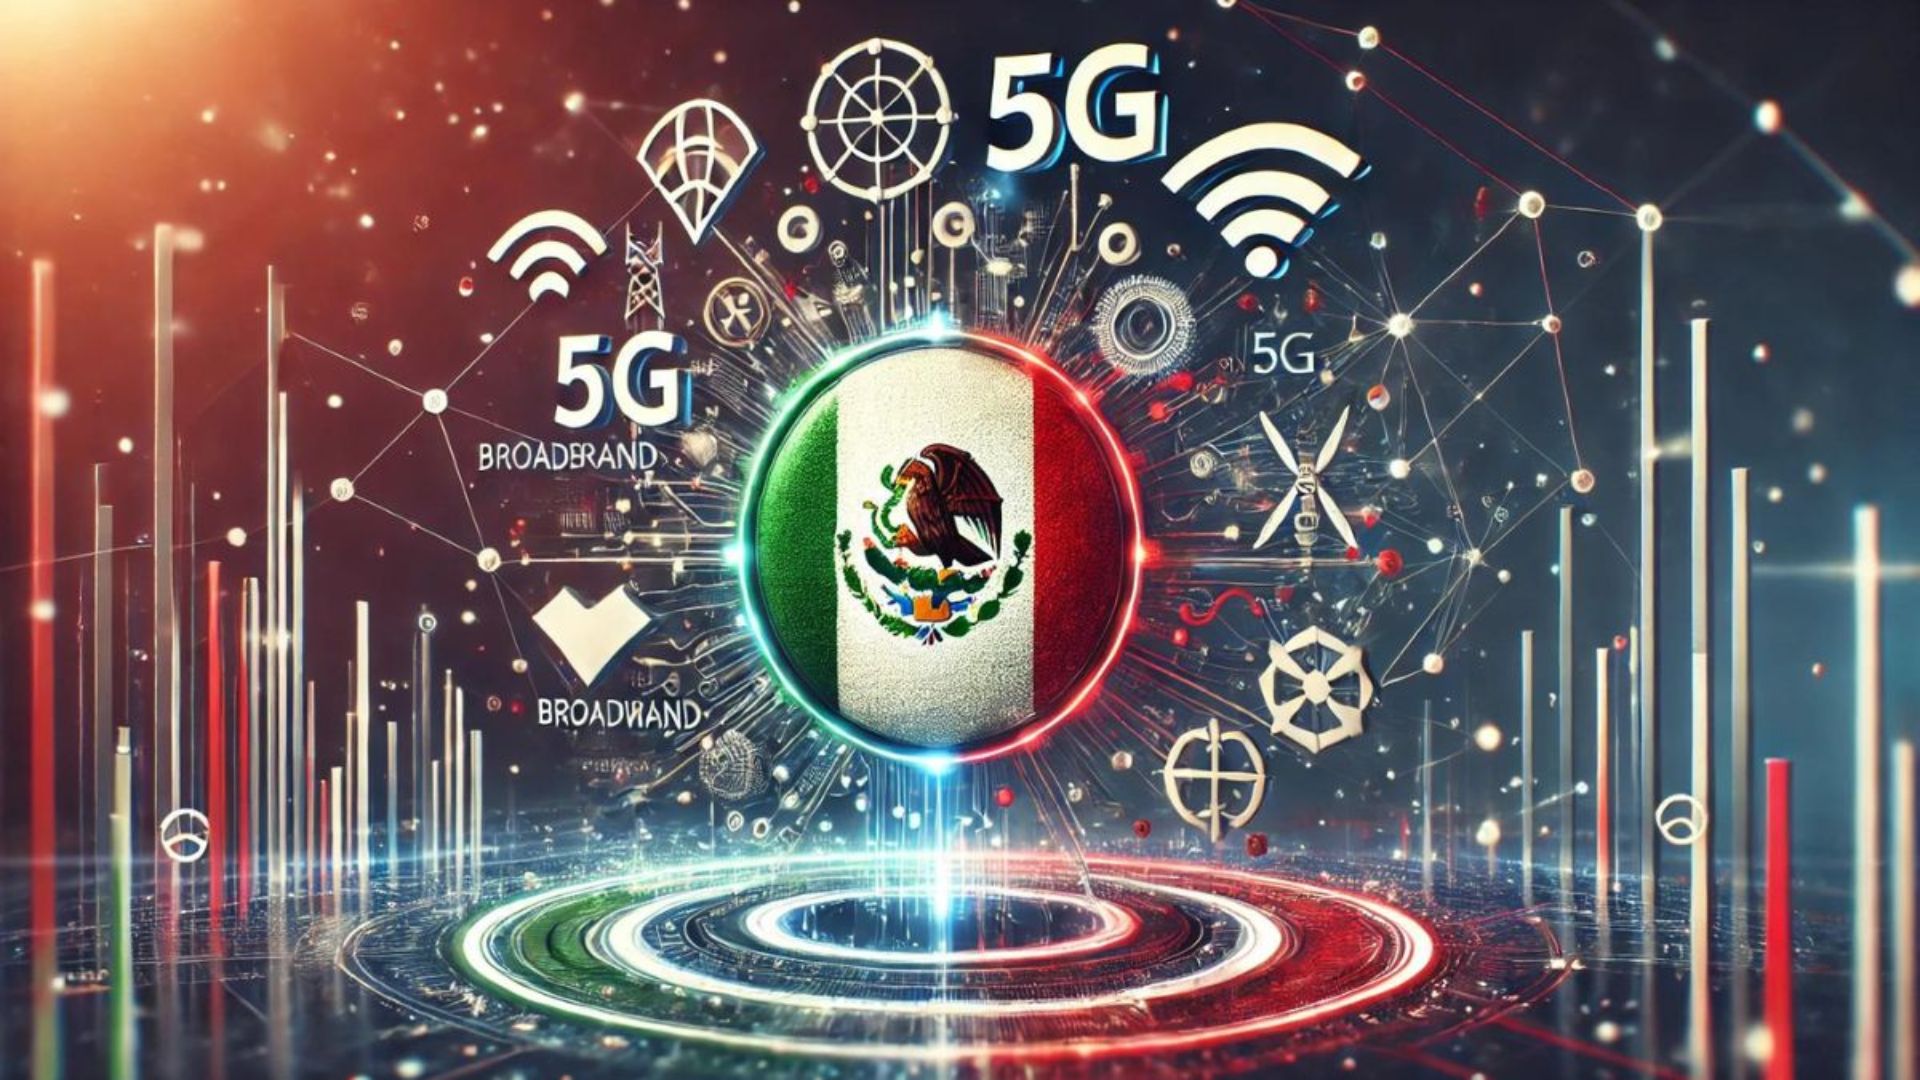 Costo del internet en México, de los más caros en Latinoamérica